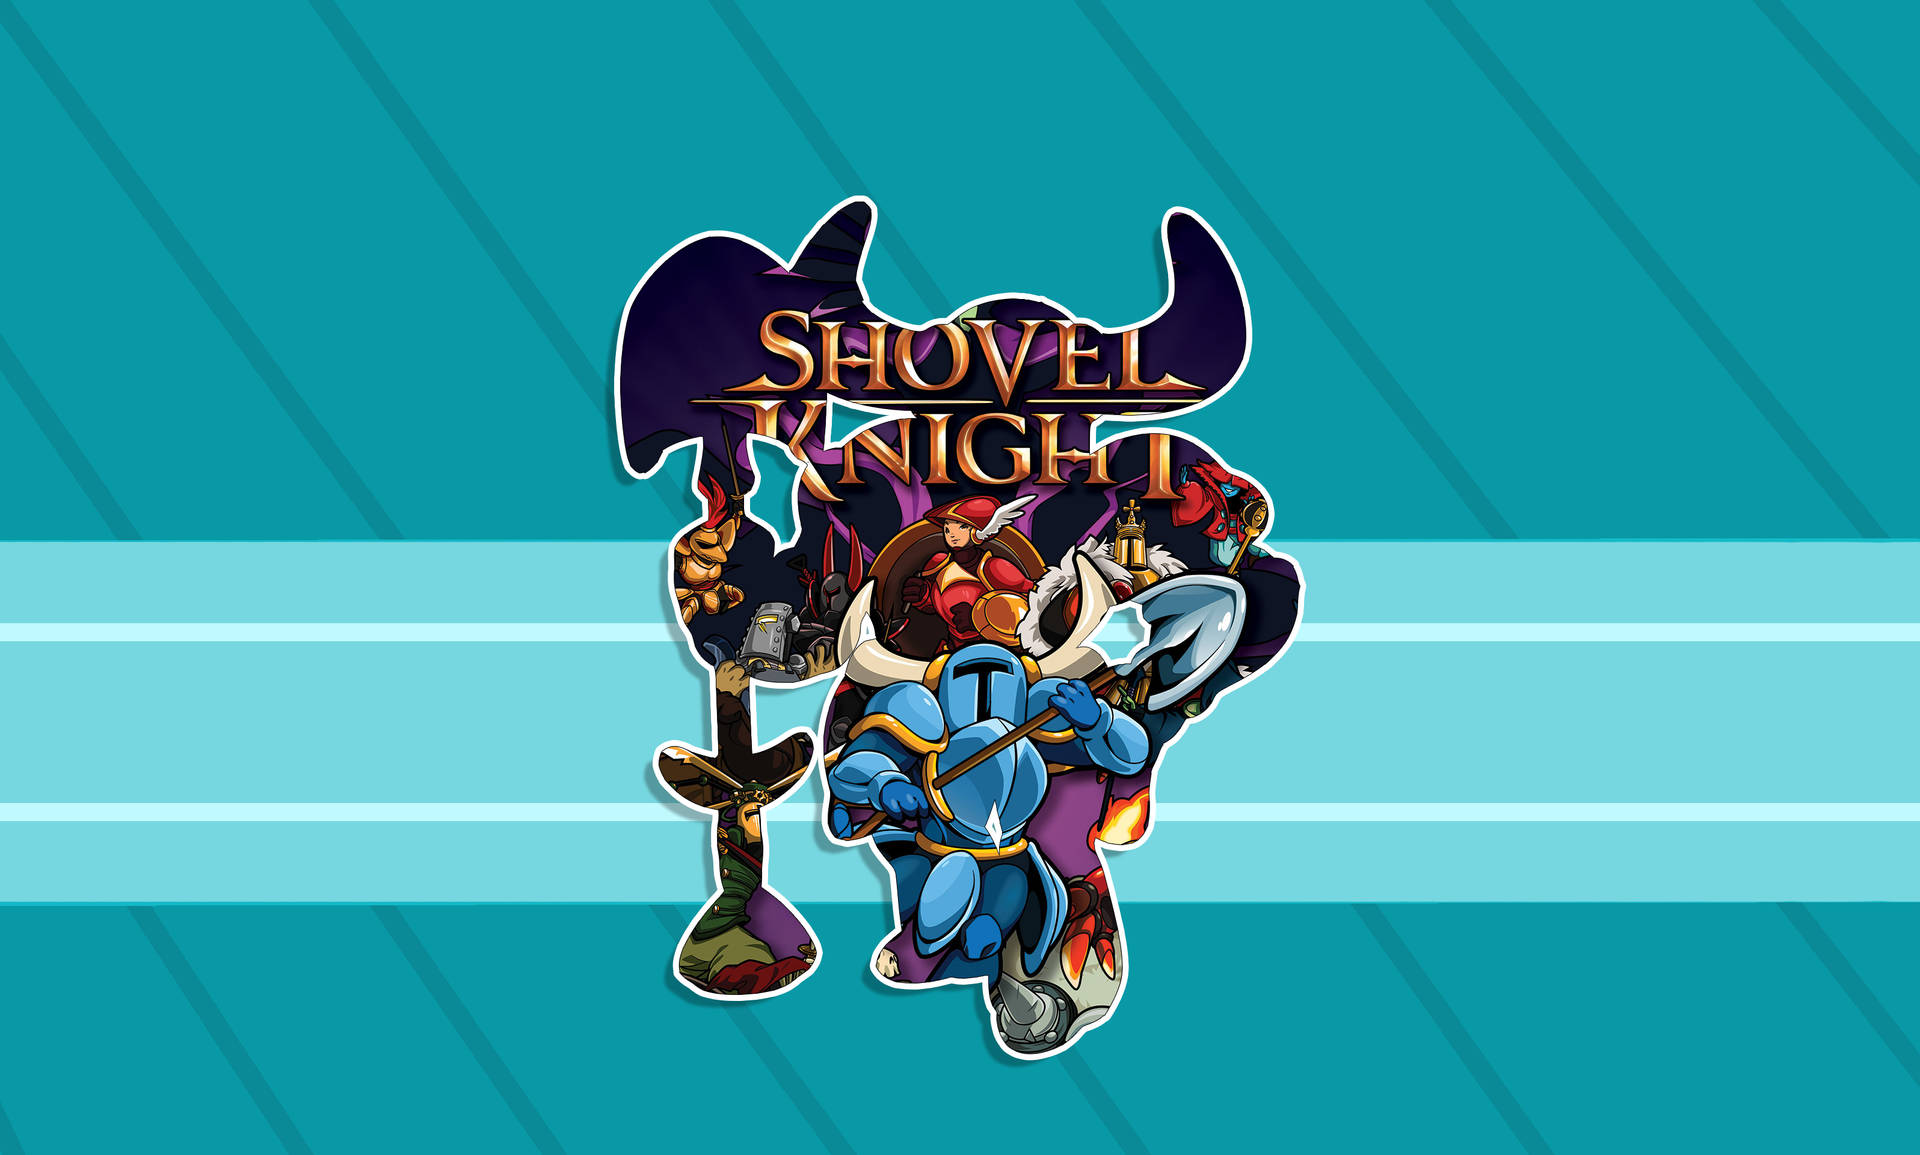 Shovel Knight Stylized Art